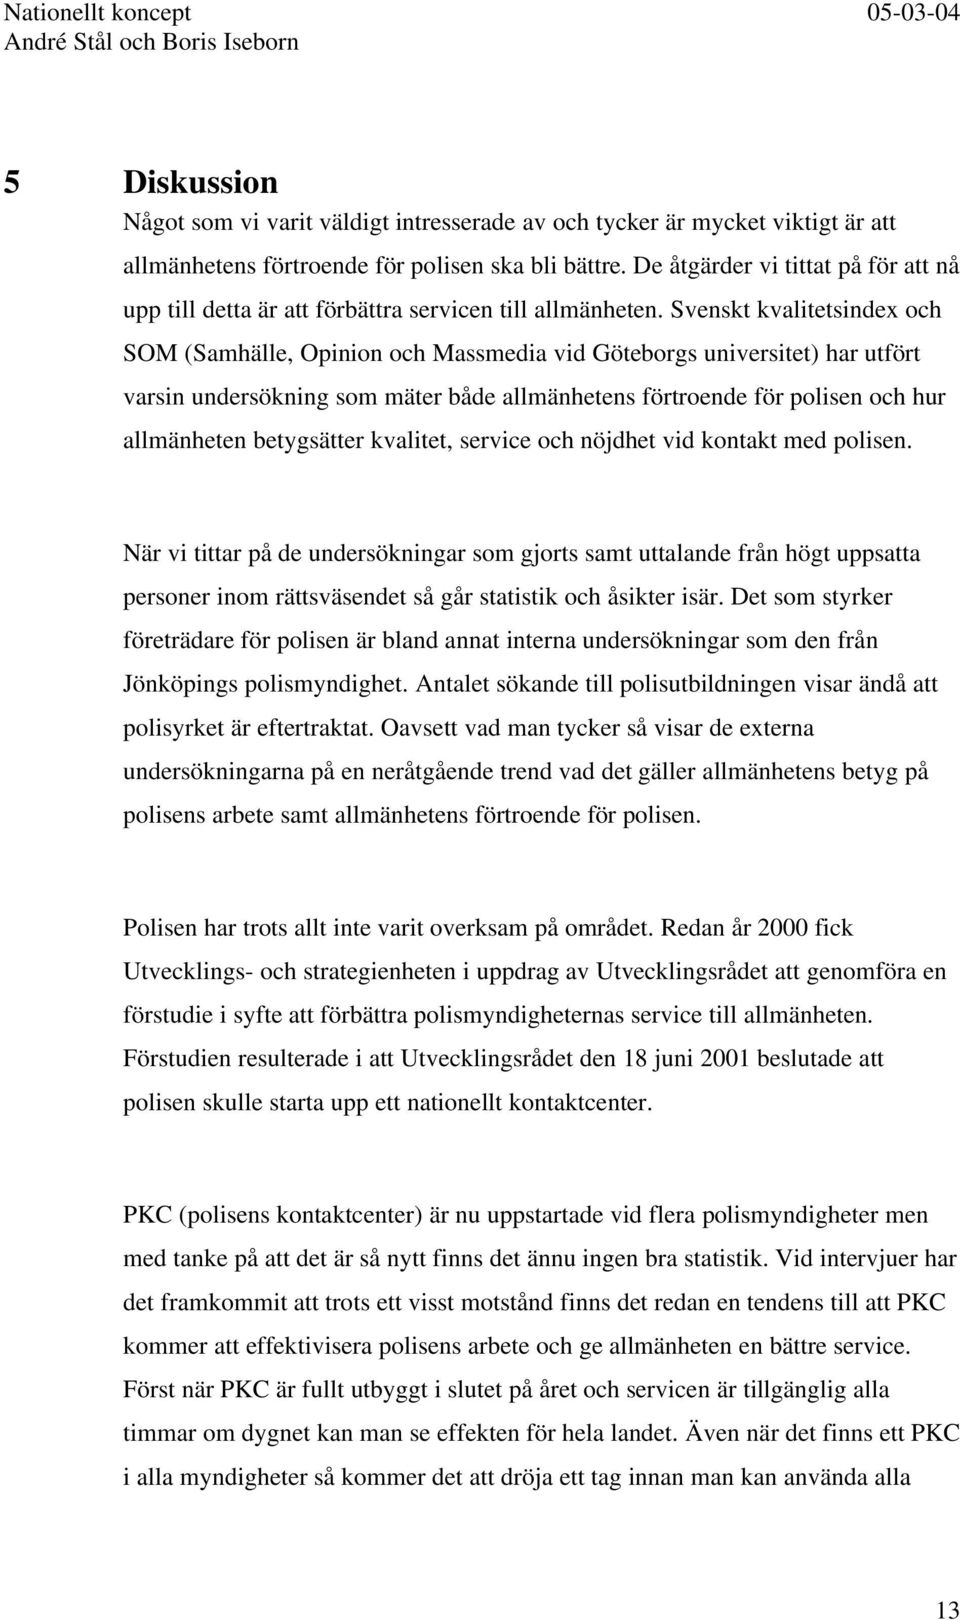 Svenskt kvalitetsindex och SOM (Samhälle, Opinion och Massmedia vid Göteborgs universitet) har utfört varsin undersökning som mäter både allmänhetens förtroende för polisen och hur allmänheten